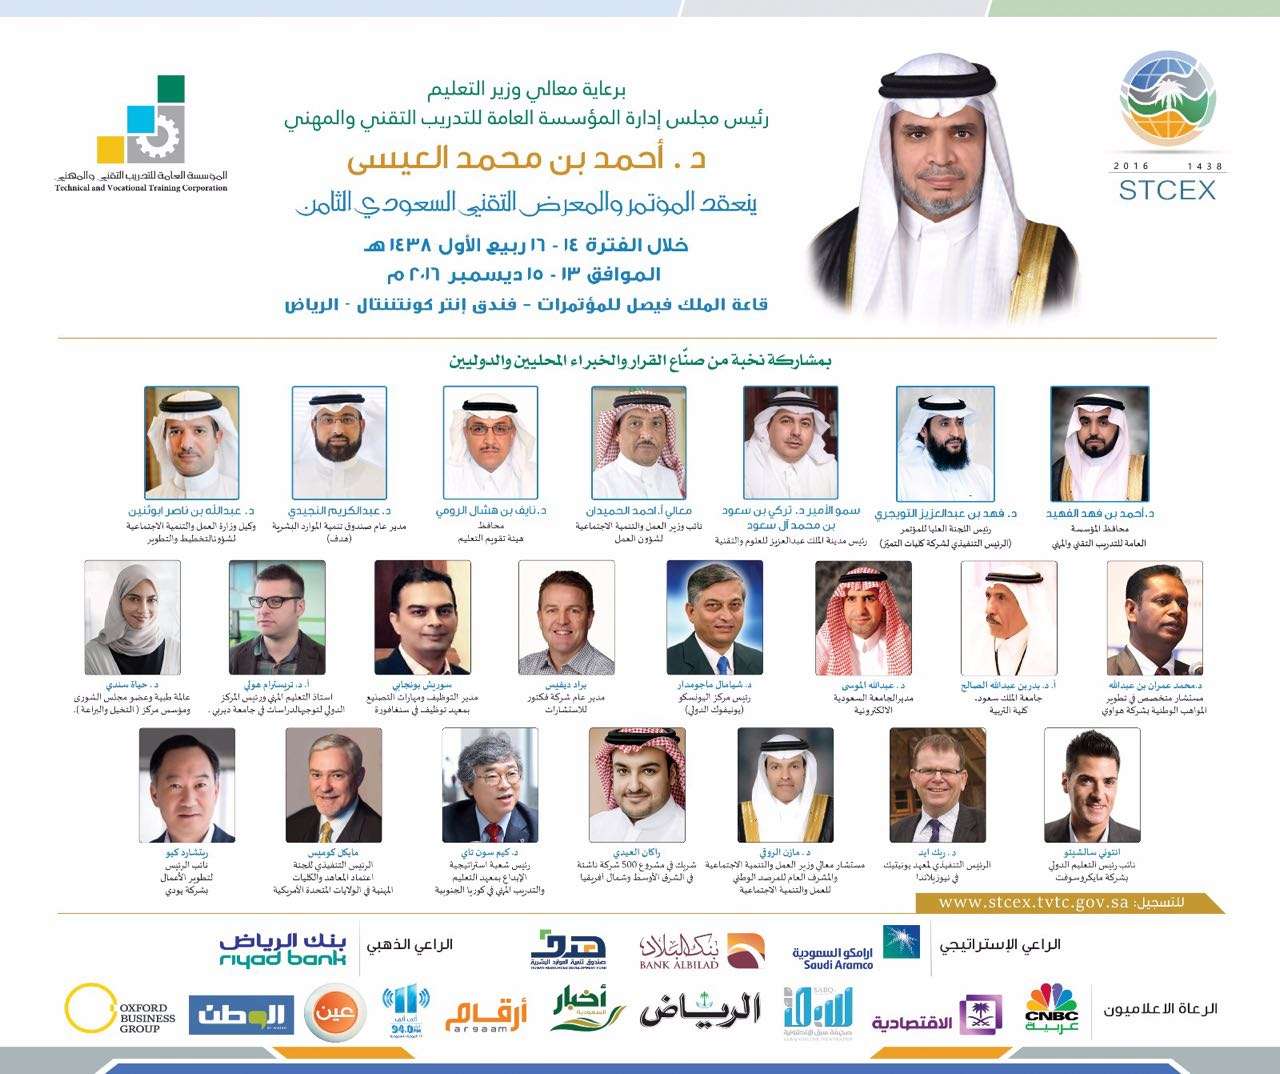 دعوة لحضور المؤتمر والمعرض التقني السعودي الثامن  برعاية معالي وزير التعليم